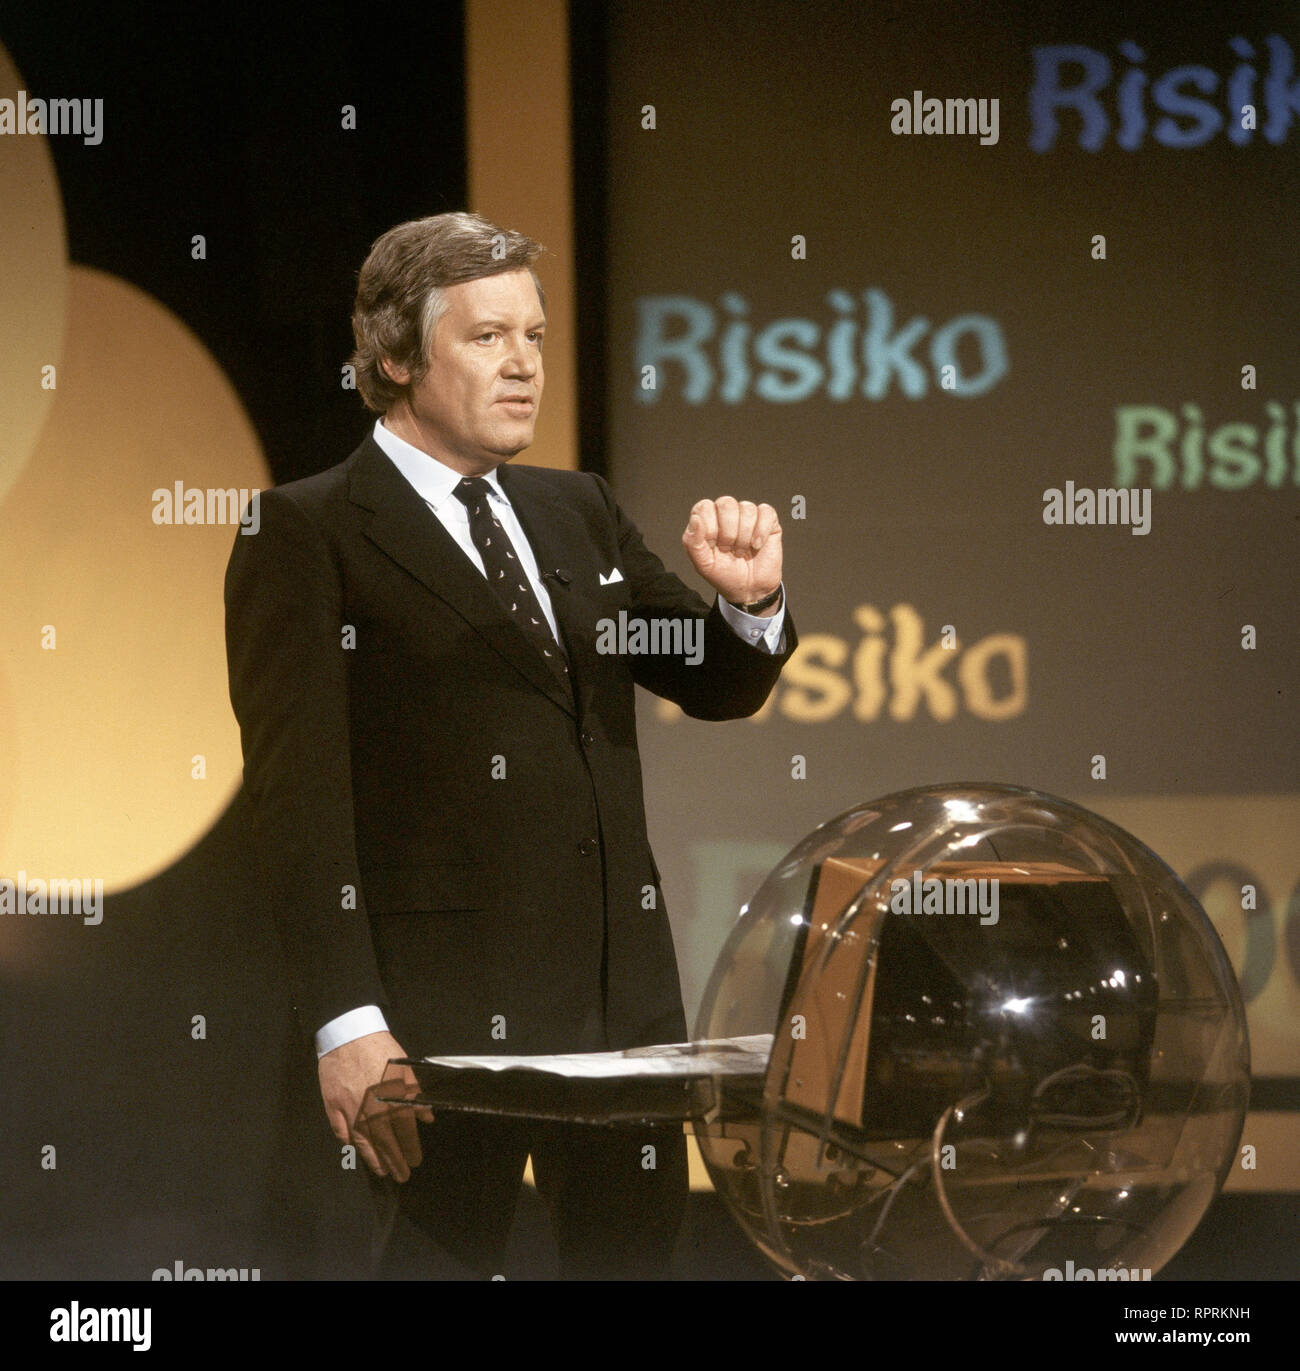 DER GROSSE PREIS / D 1980 / Wim Thoelke moderiert 'Der grosse Preis' im ZDF, aufgenommen zu Beginn der 80er Jahre Stock Photo